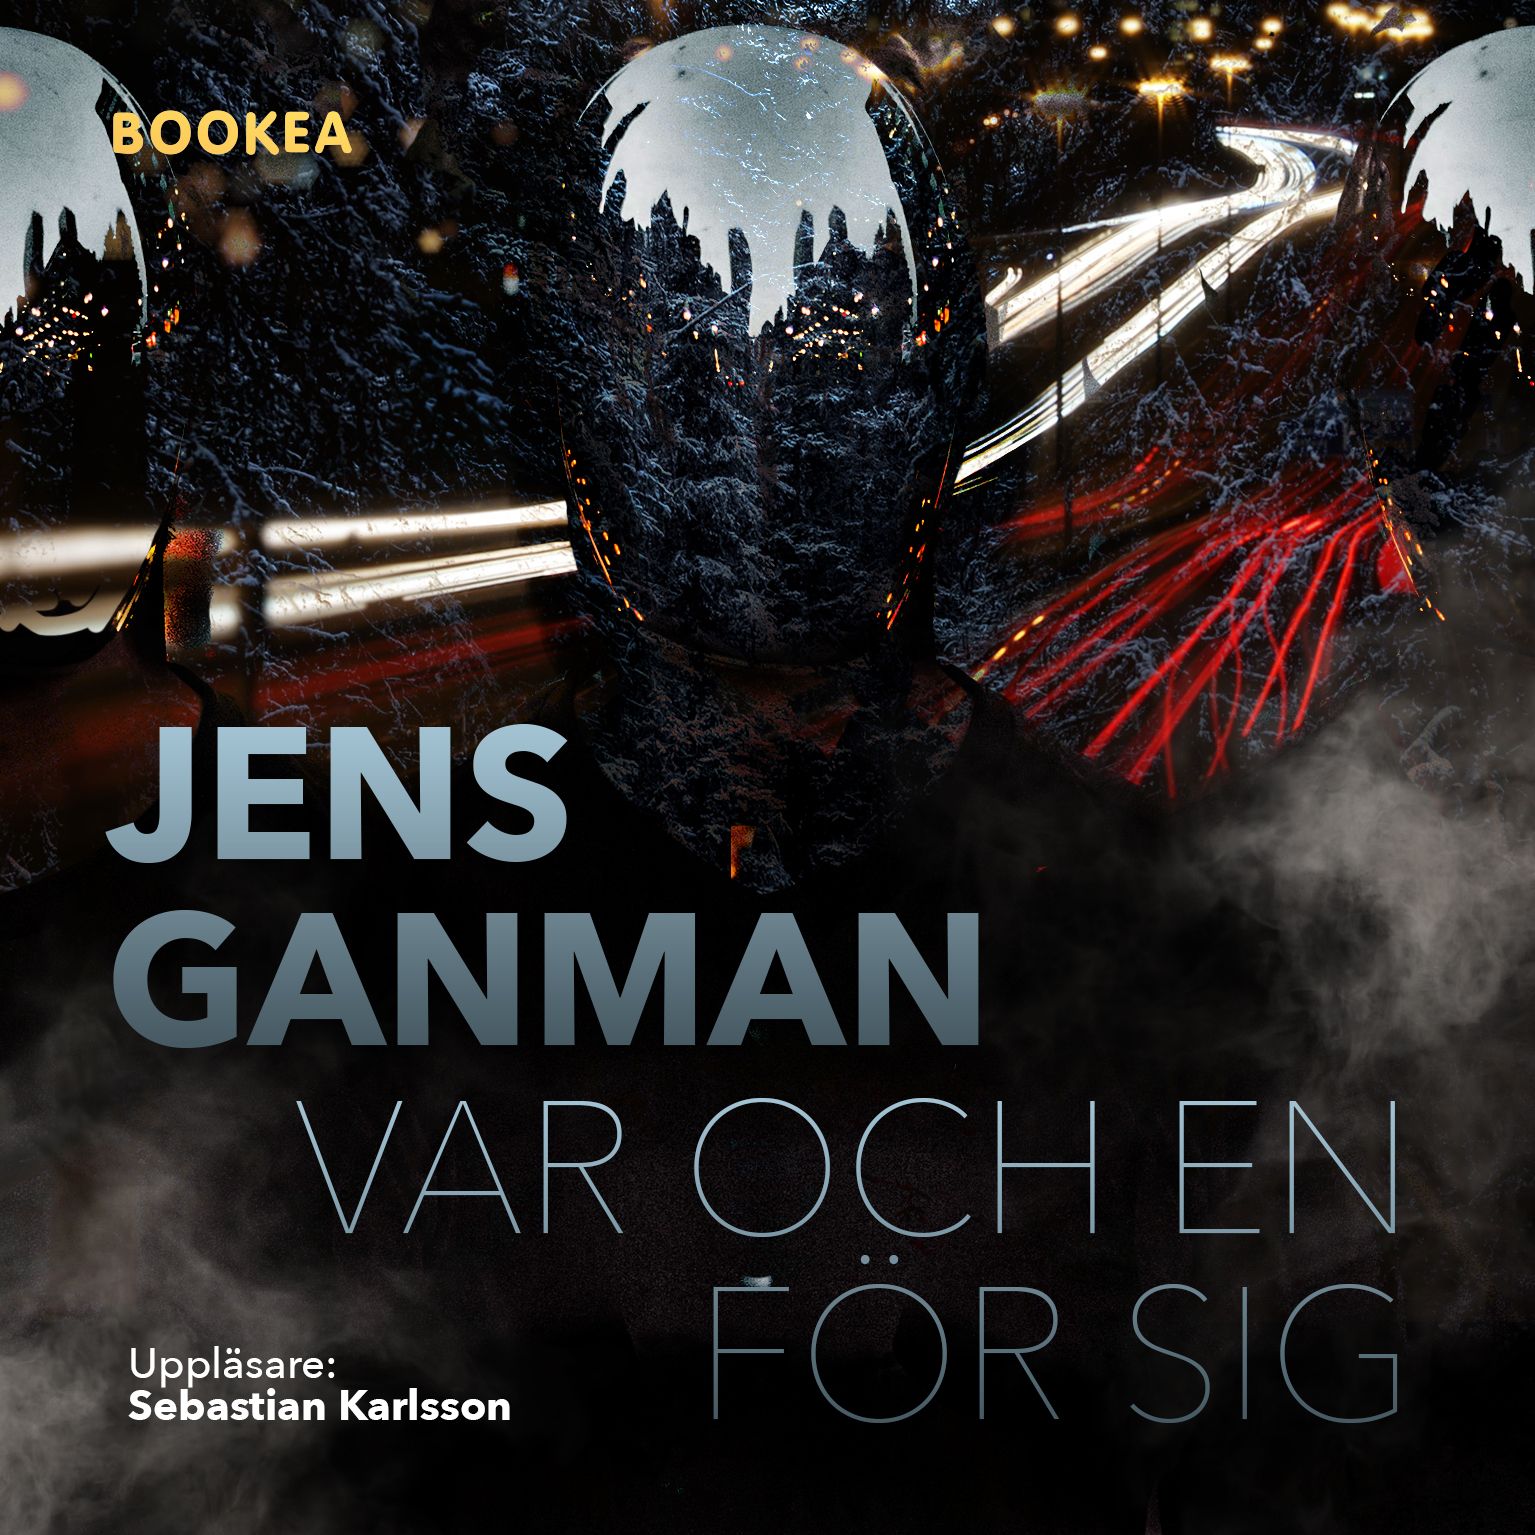 Var och en för sig, ljudbok av Jens Ganman